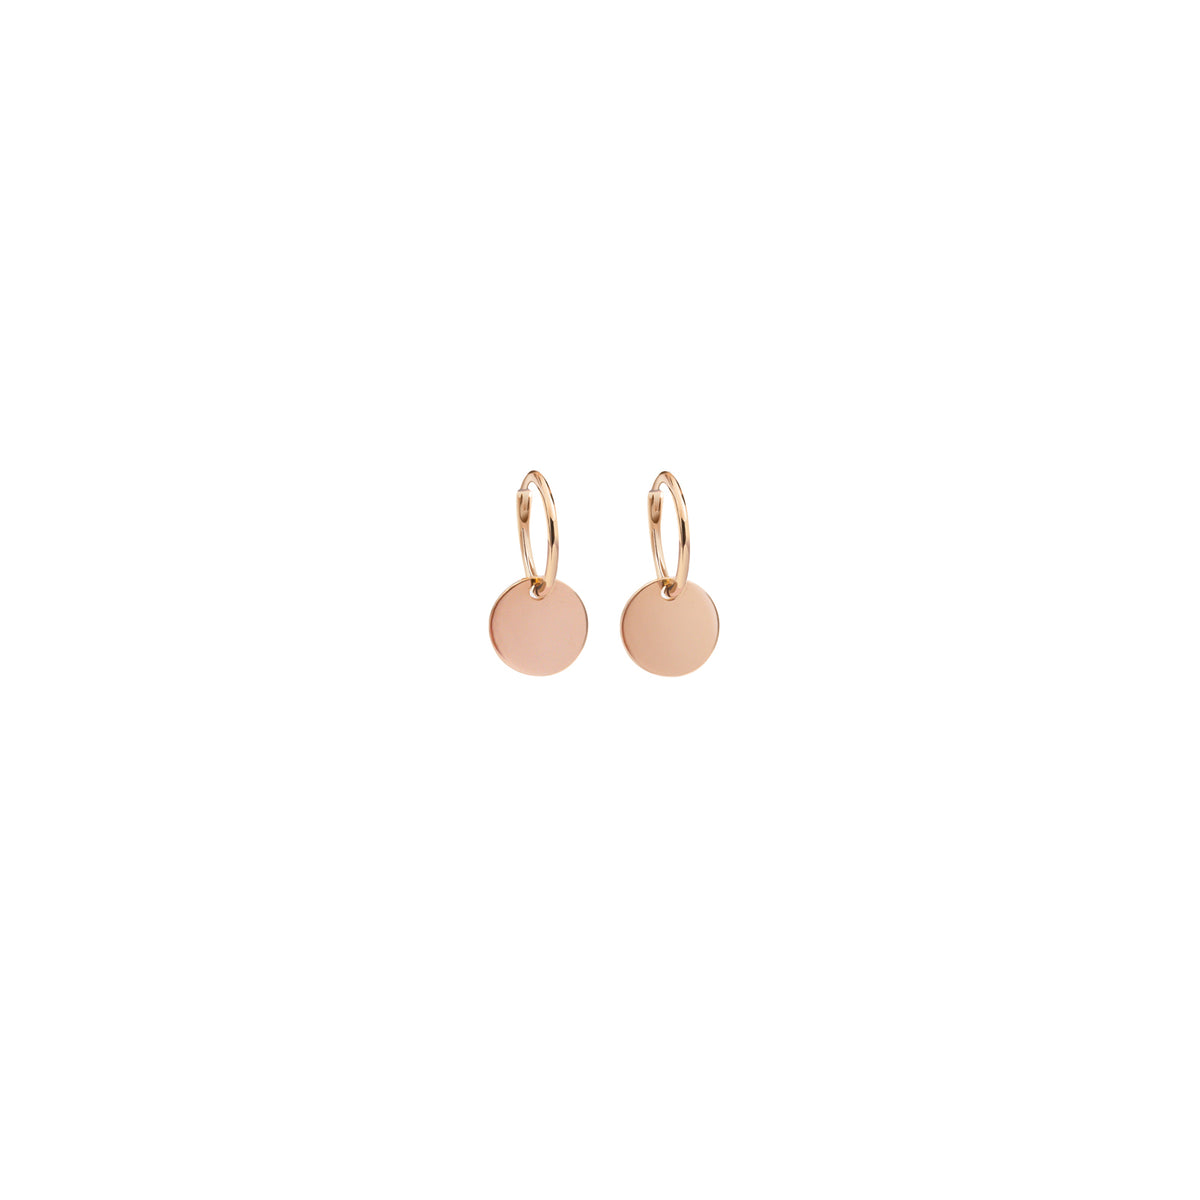 Isola rose gold earrings